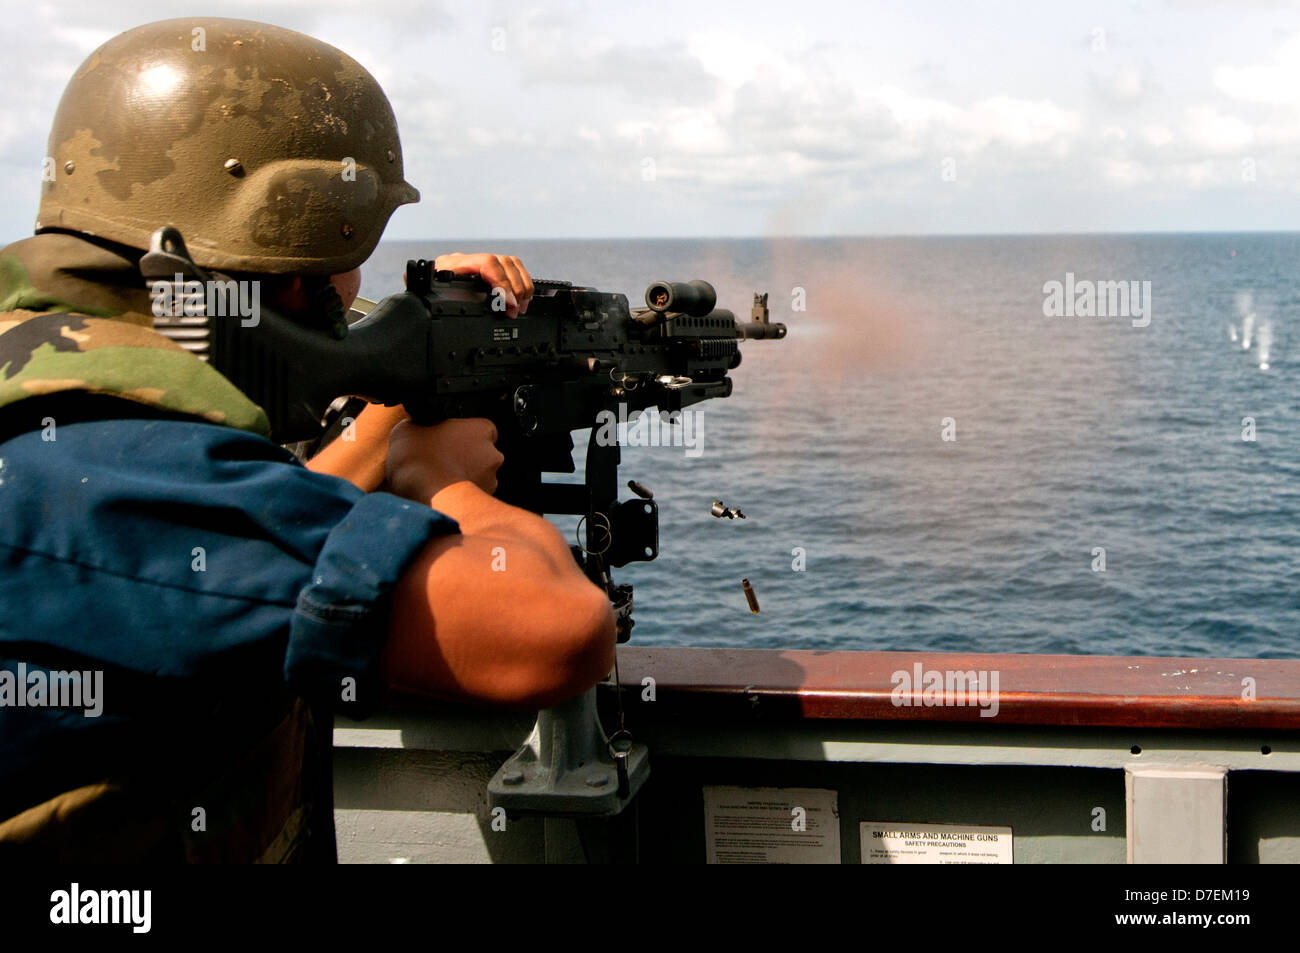 A Sailor fires an M240B machine gun at sea. Stock Photo